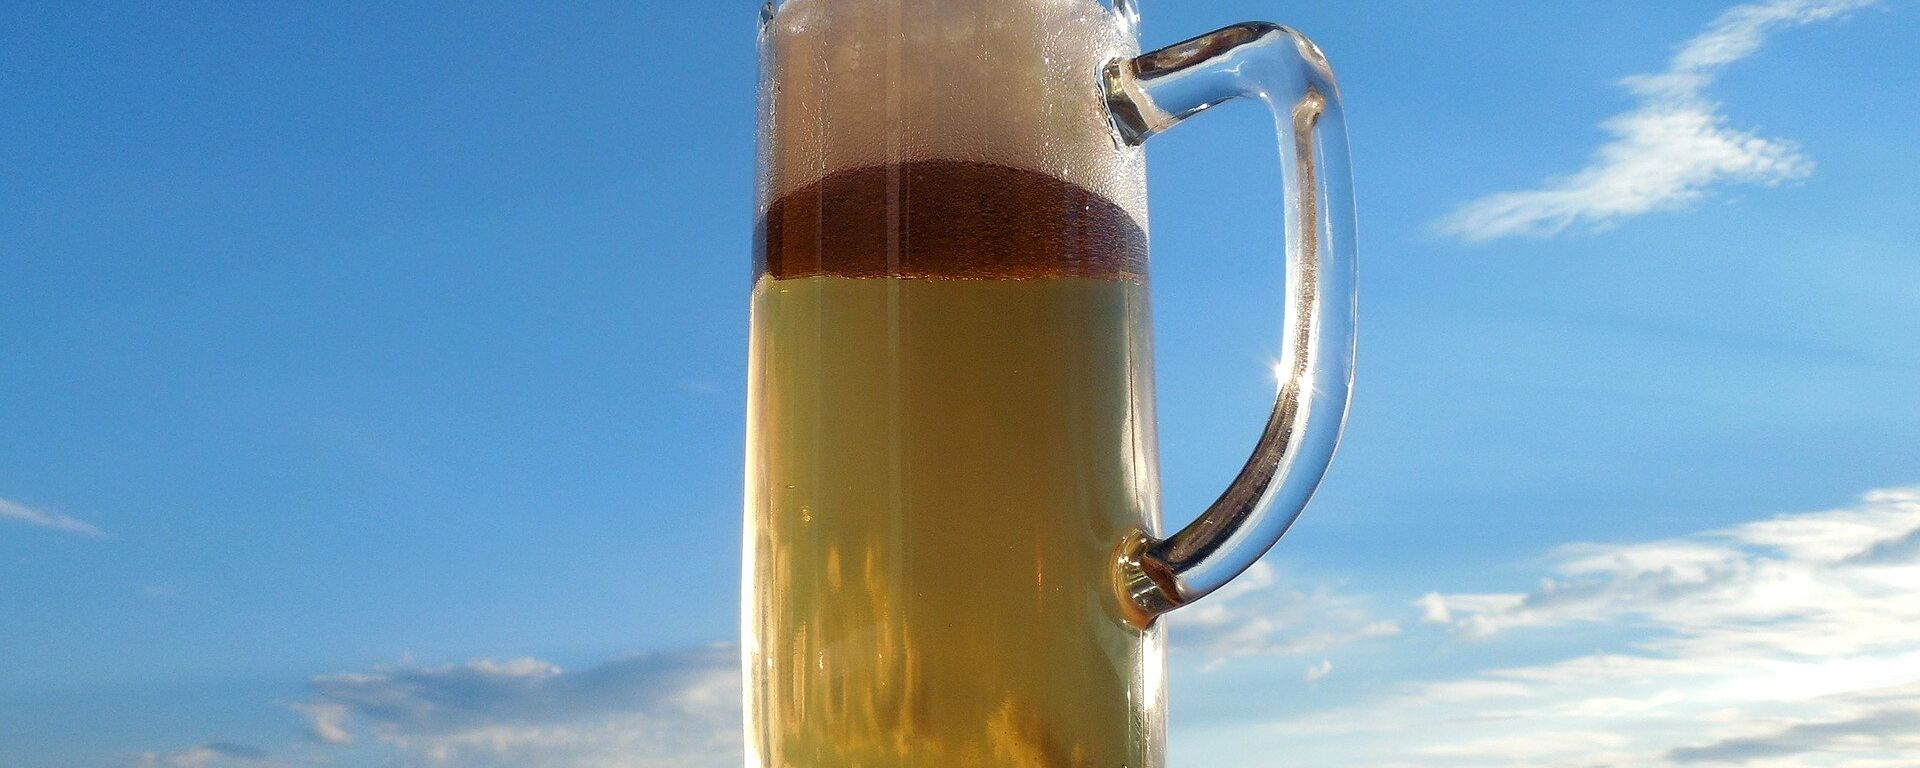 Glass of beer - Sputnik International, 1920, 09.08.2020